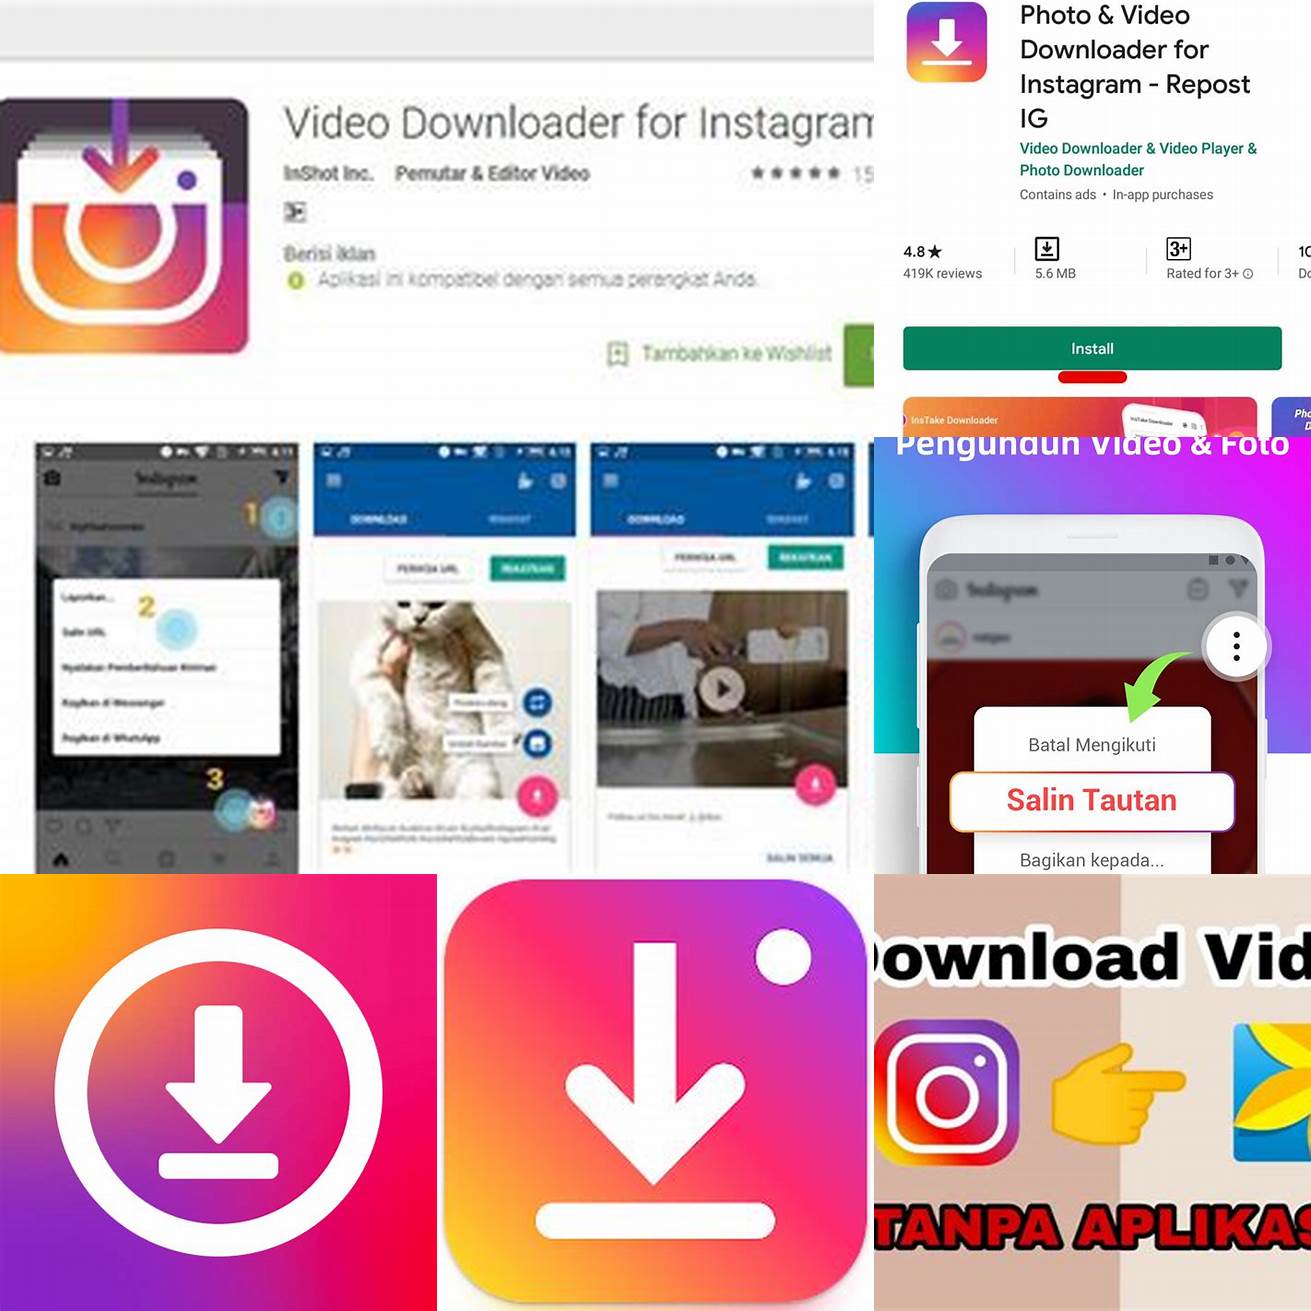 Unduh aplikasi Instagram Video Downloader APK dari sumber tepercaya